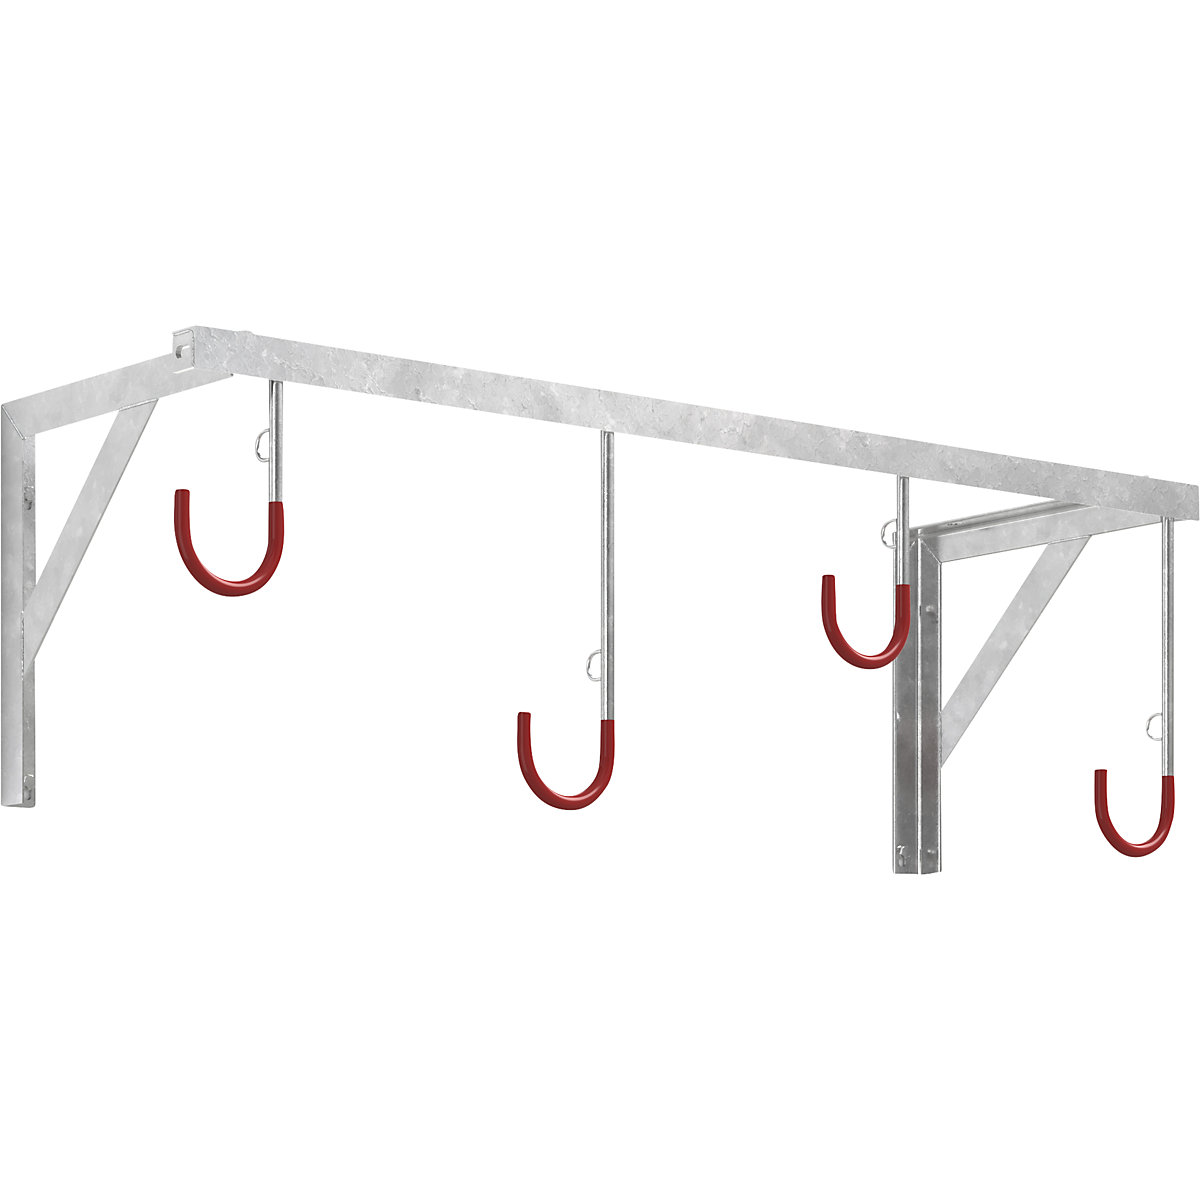 Bicycle hanger – eurokraft basic